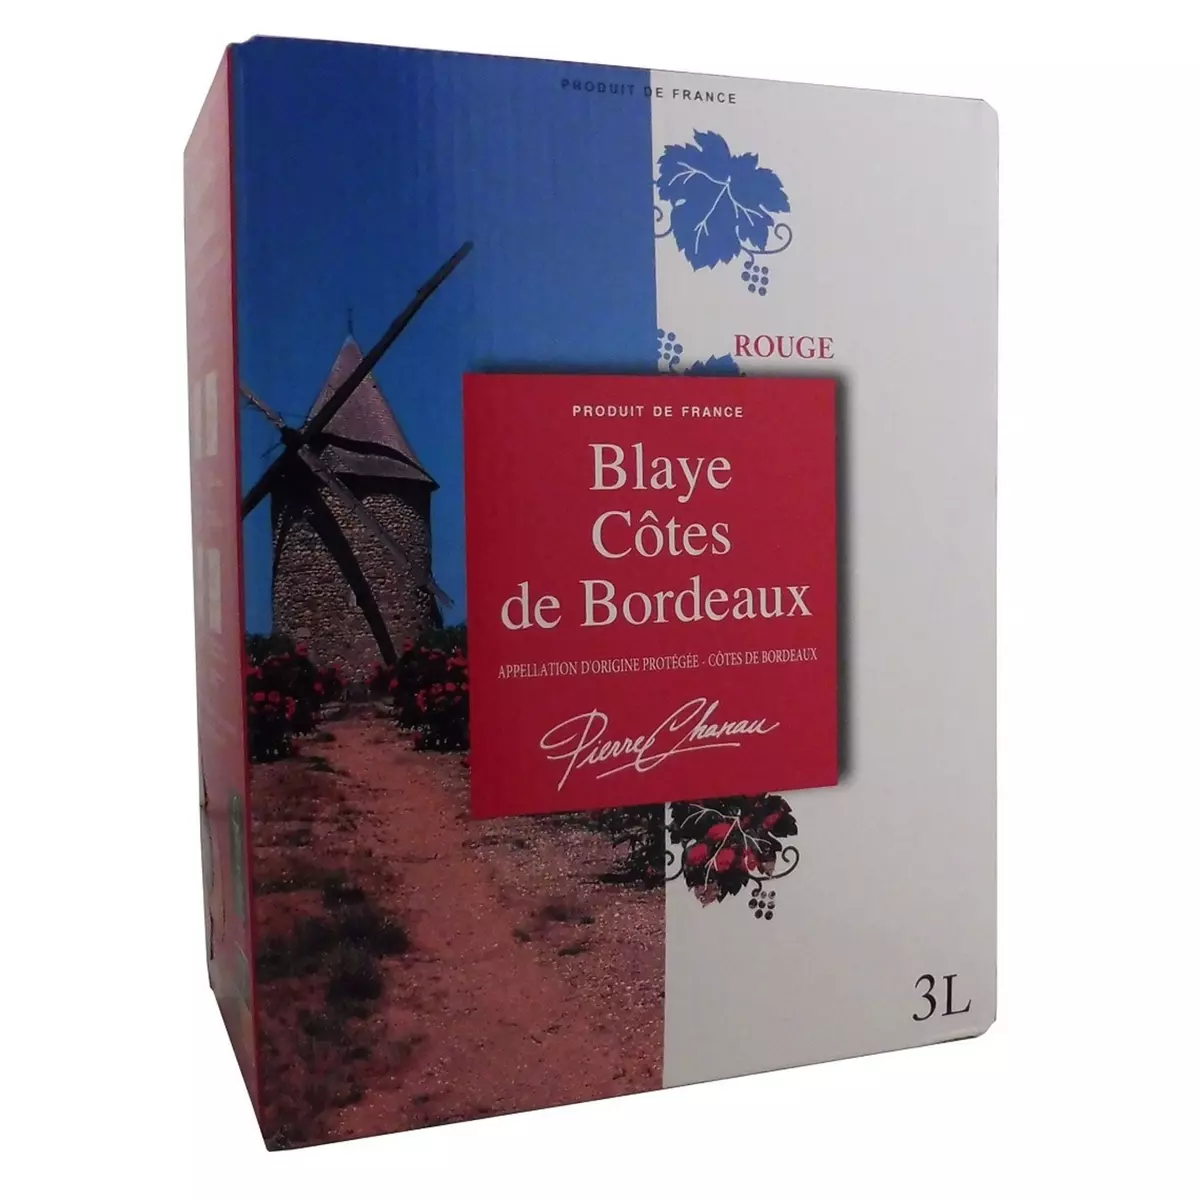 PIERRE CHANAU AOP Blaye Côtes-de-Bordeaux rouge Grand format 3L